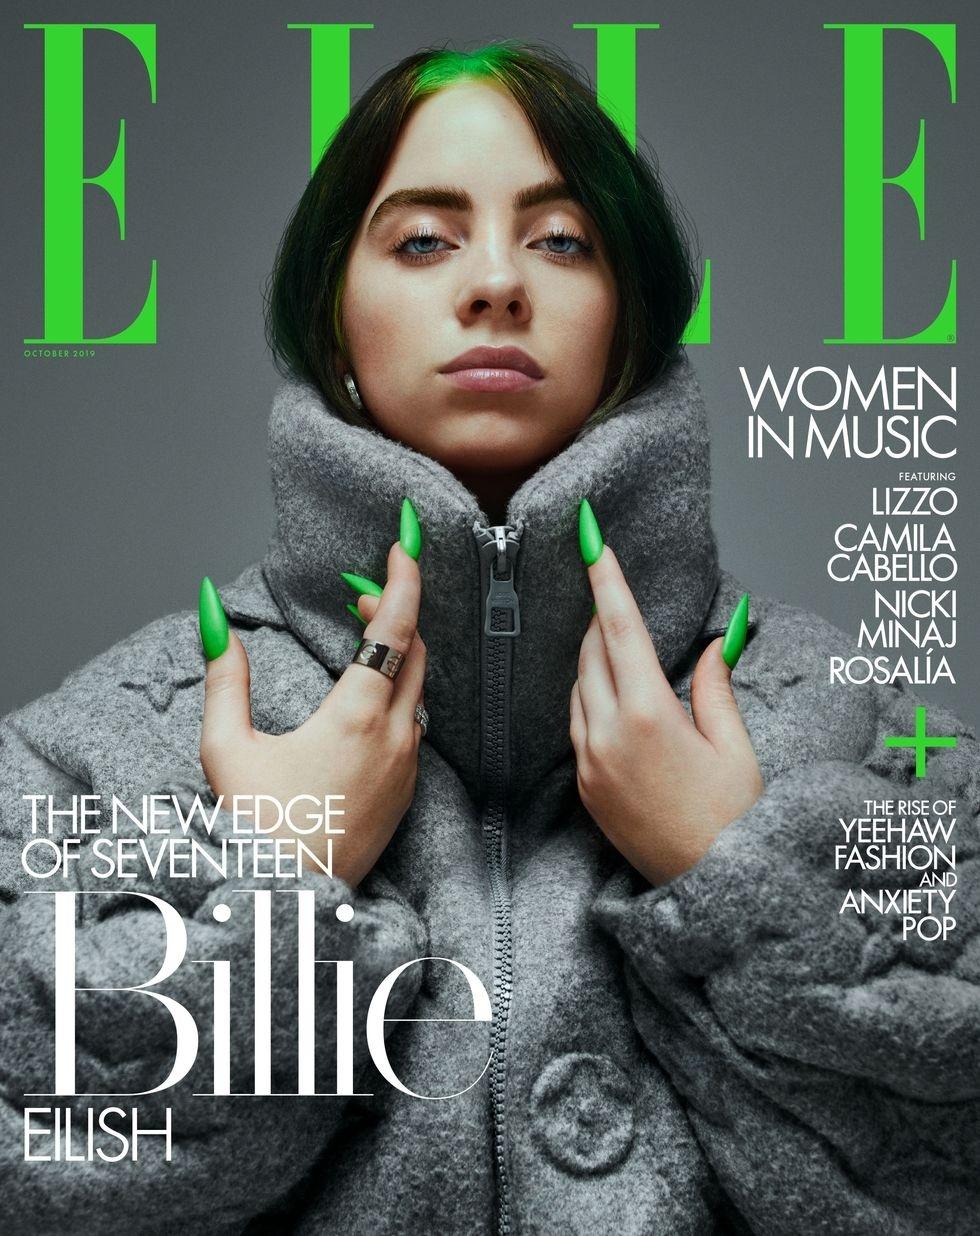 Revista Elle proíbe uso de peles animais em todas as edições mundiais